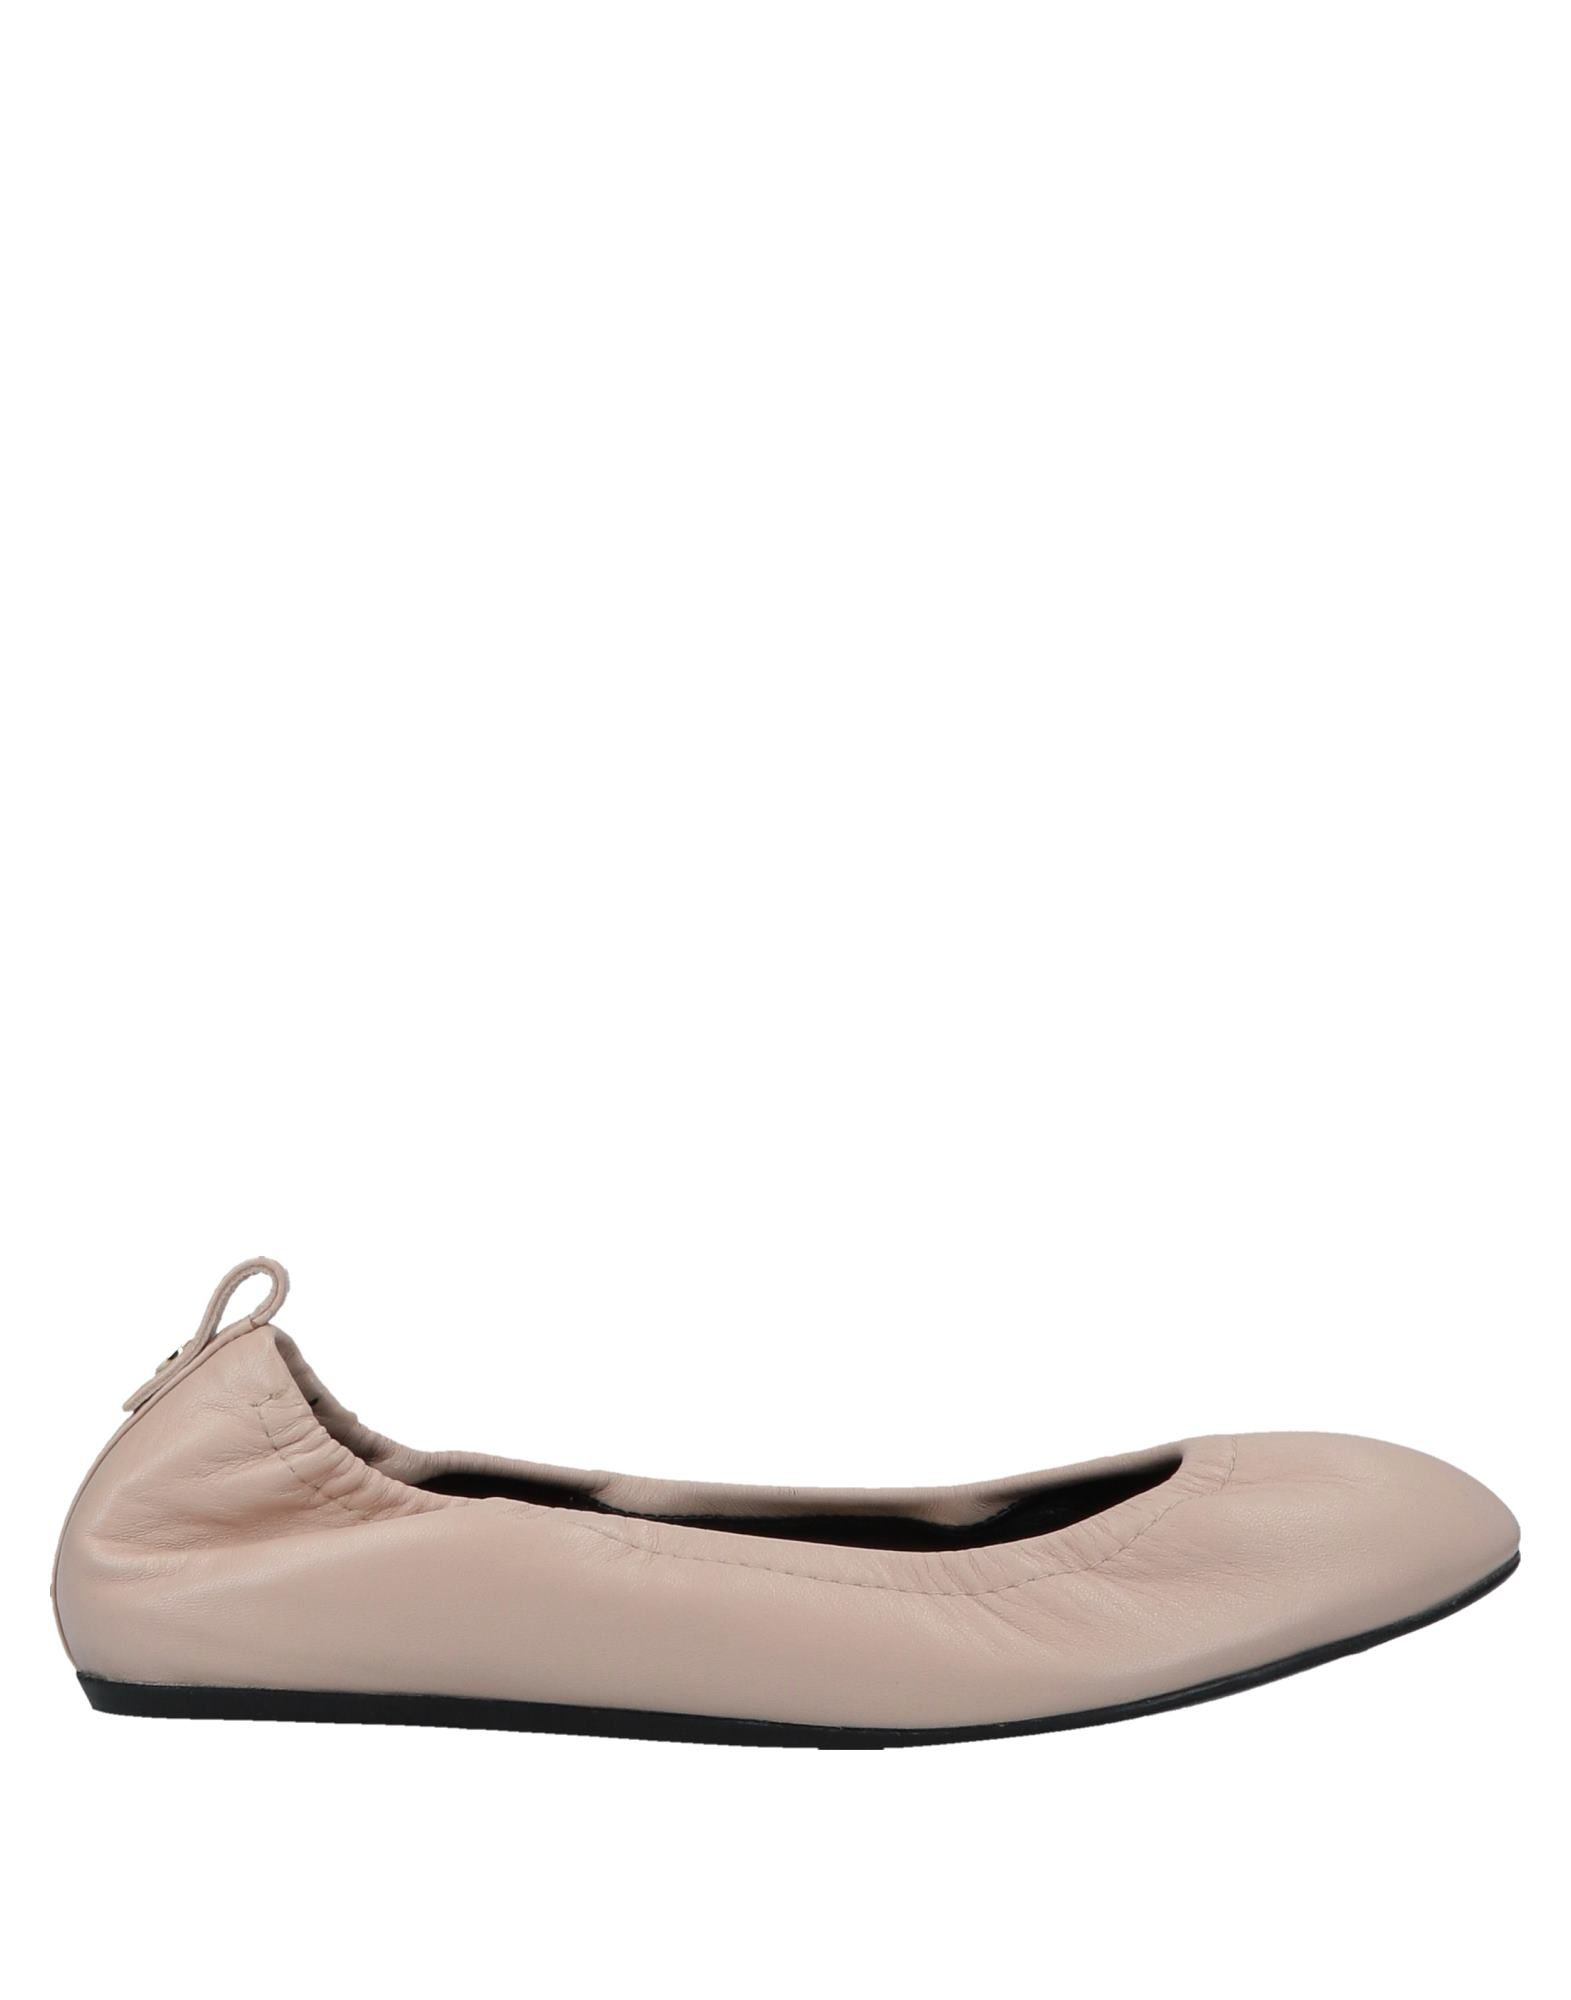 Lanvin Ballet Flats In Light Pink | ModeSens